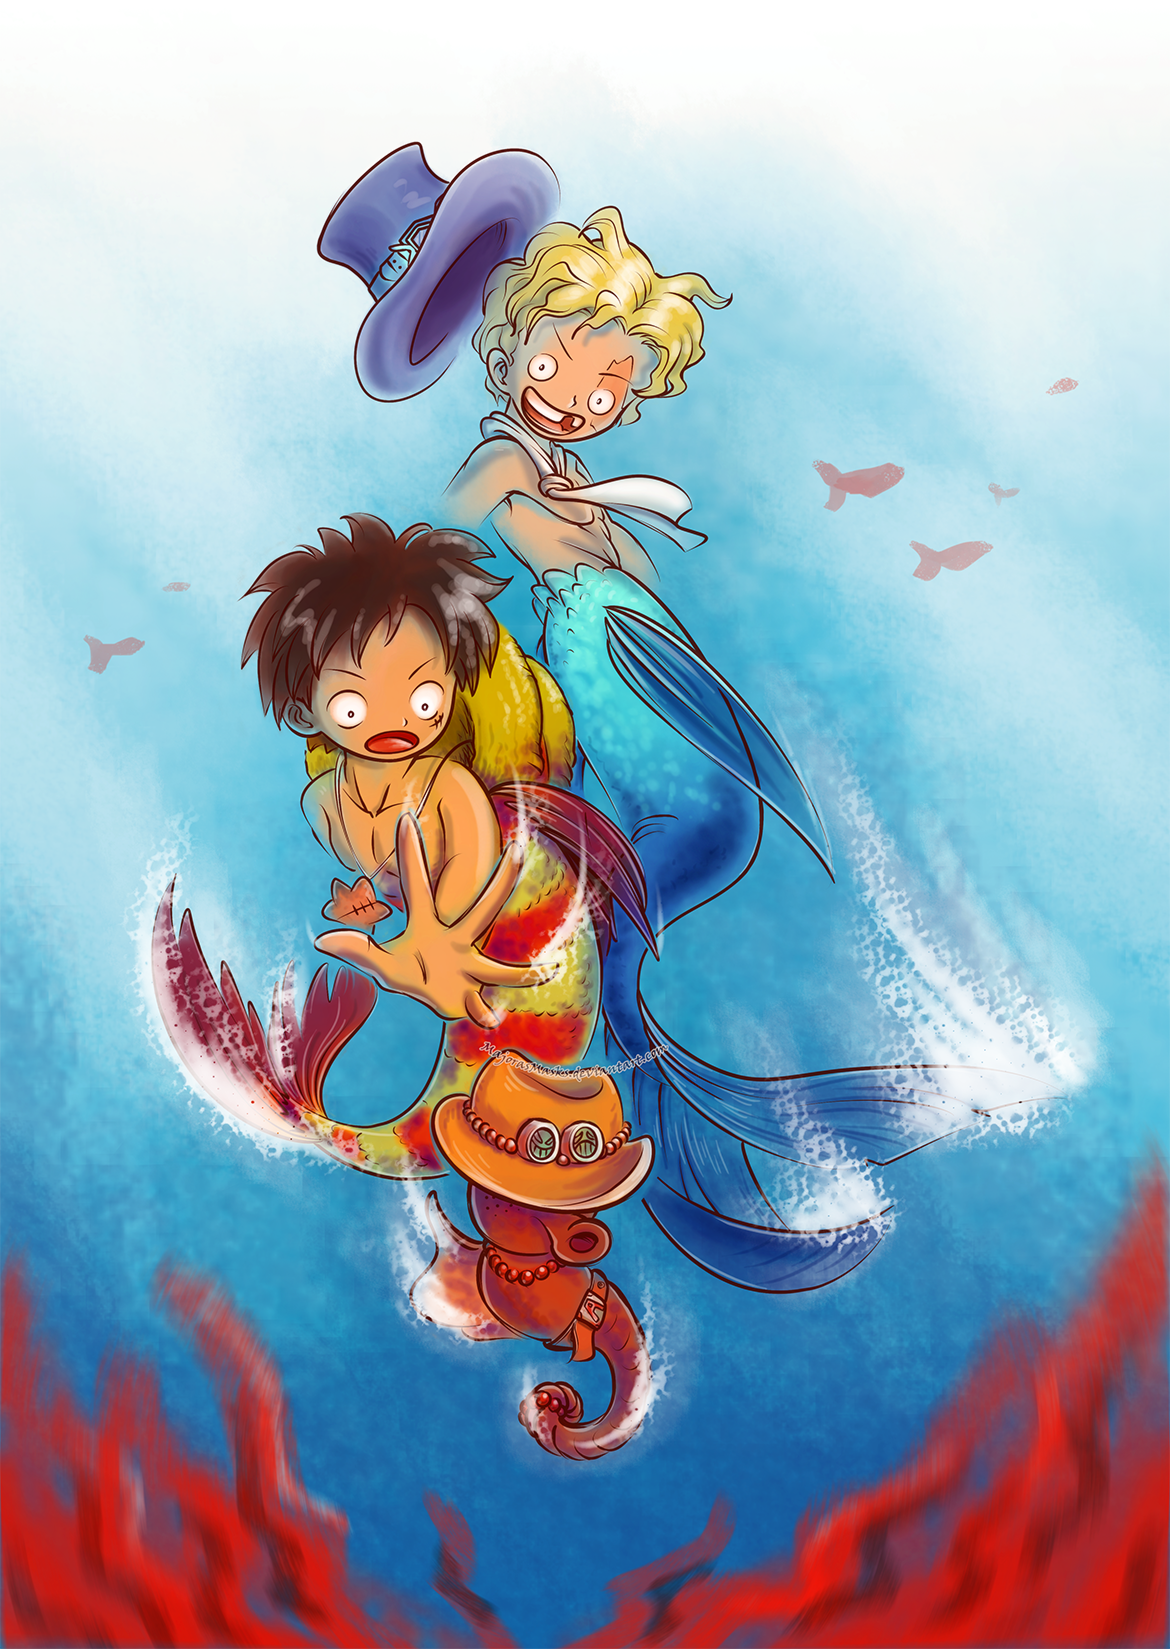 [One Piece] Underwater Adventures (ASL mer!AU)